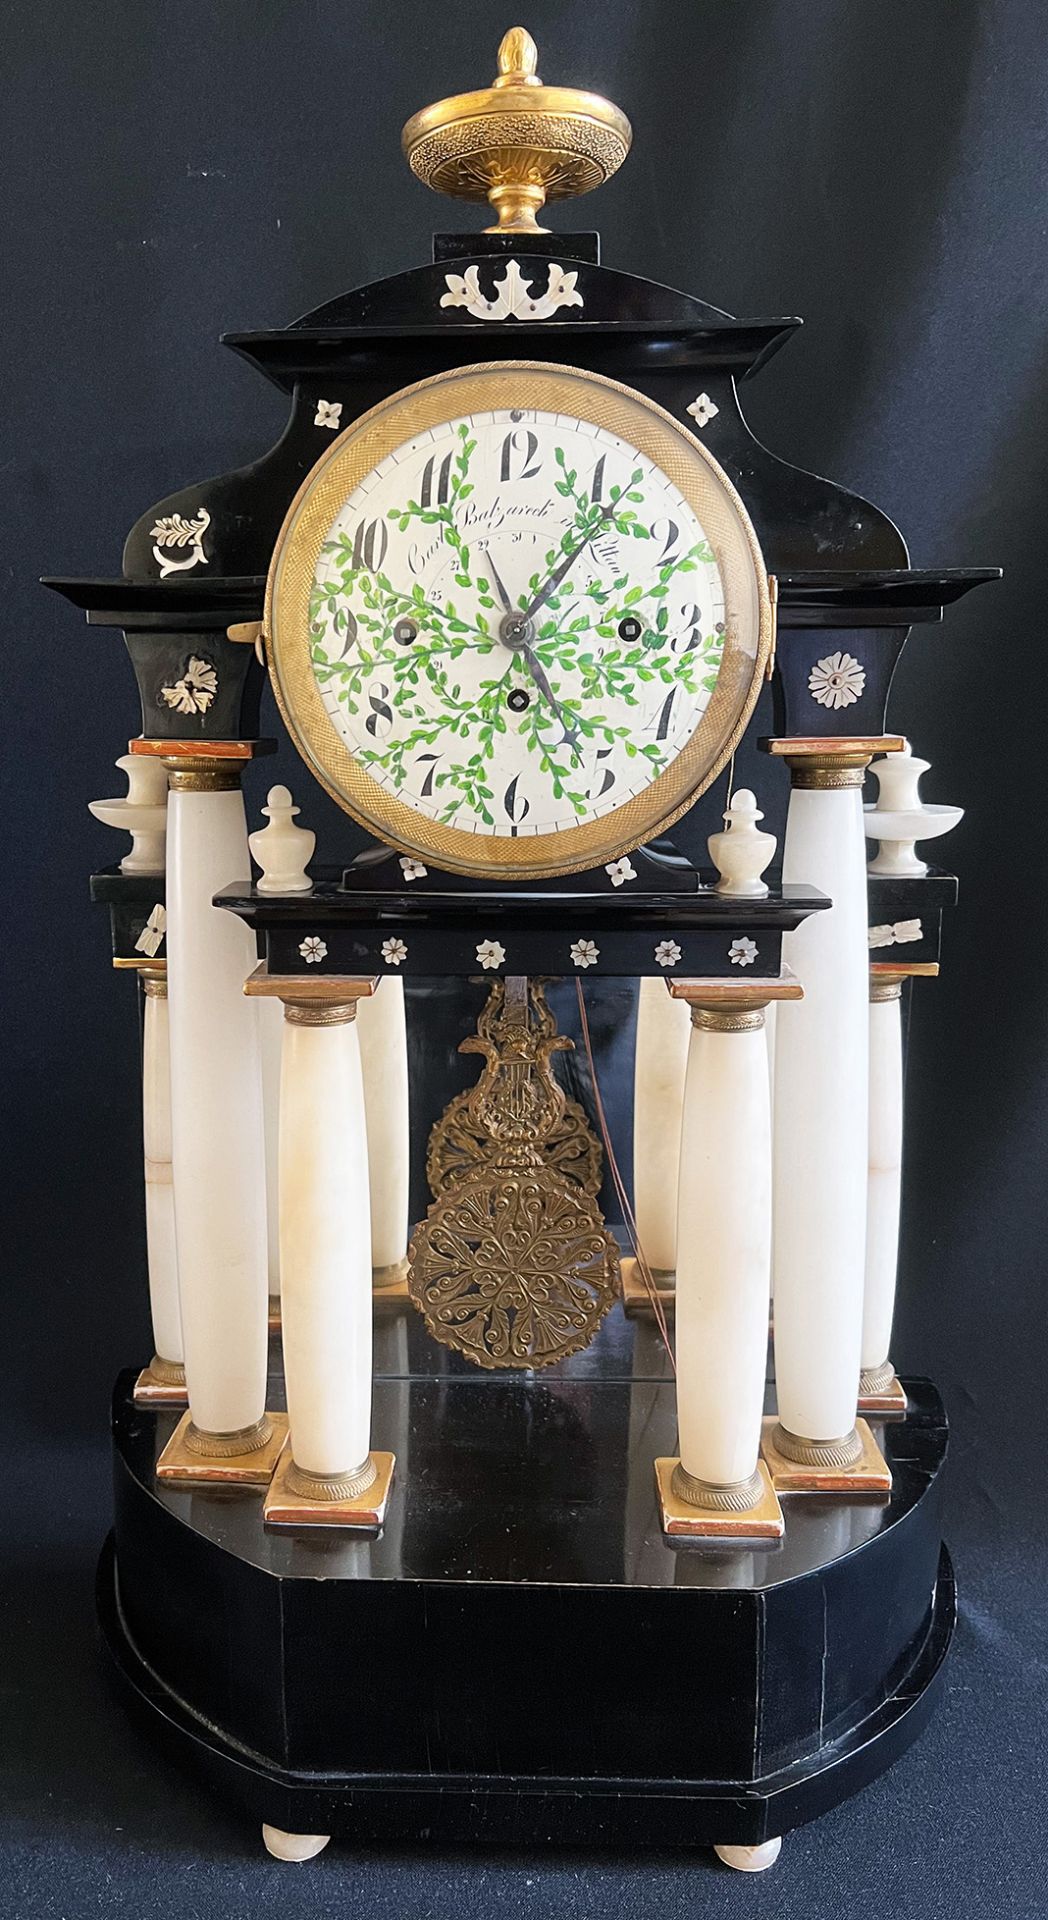 Säulenuhr/ column clock. Alabaster, Holz, Perlmuttapplikationen, Zifferblatt mit arabischen